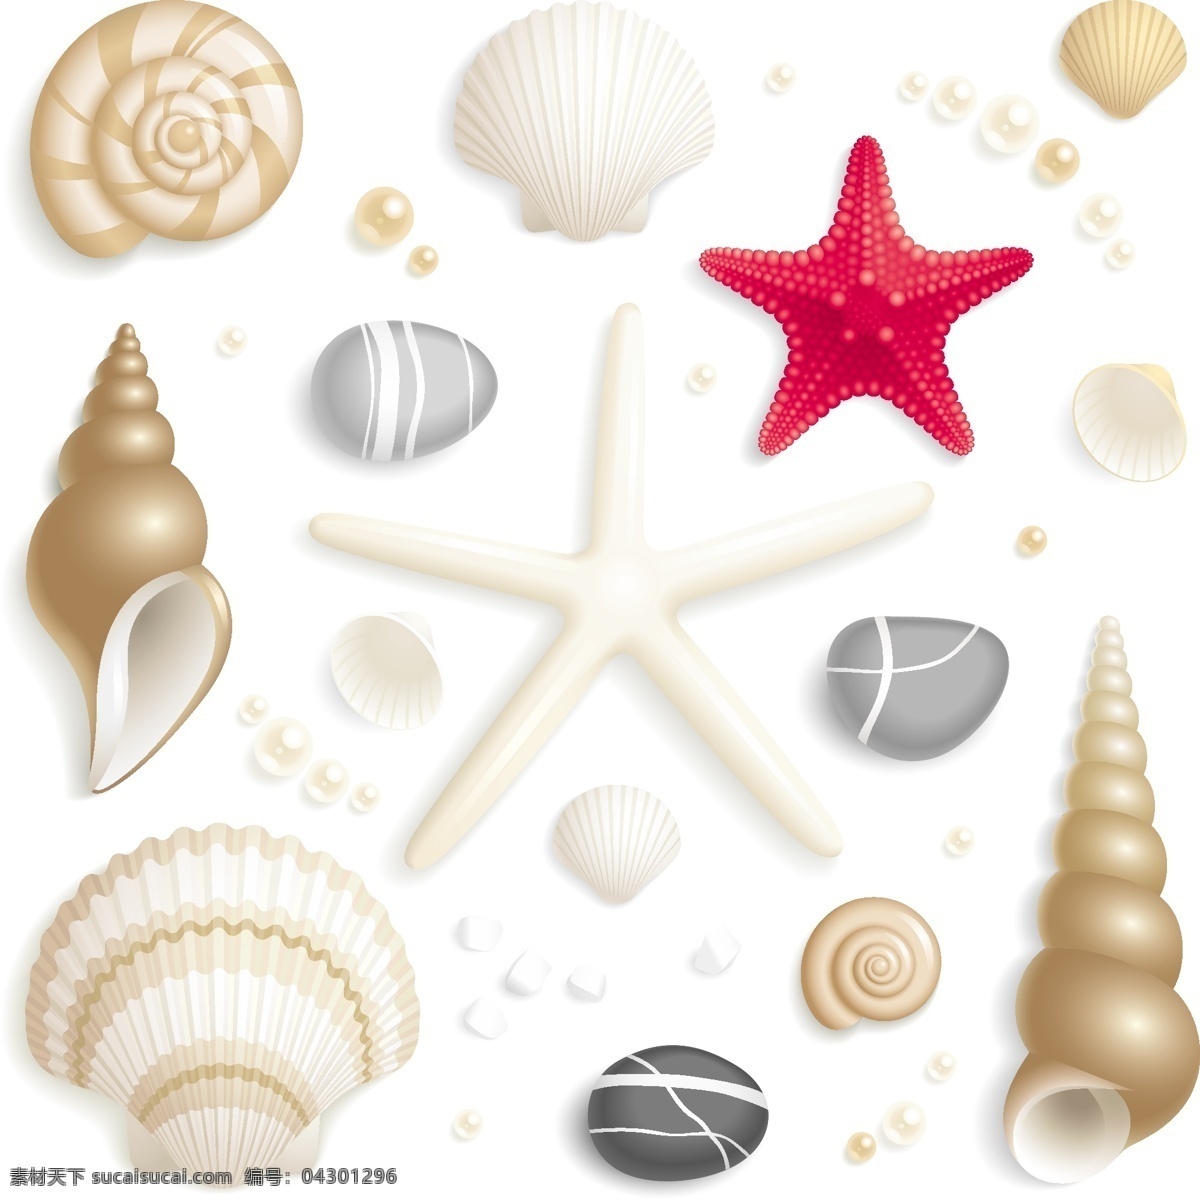 贝壳 海螺 海星 珍珠 装饰品 海洋生物 矢量 生物世界